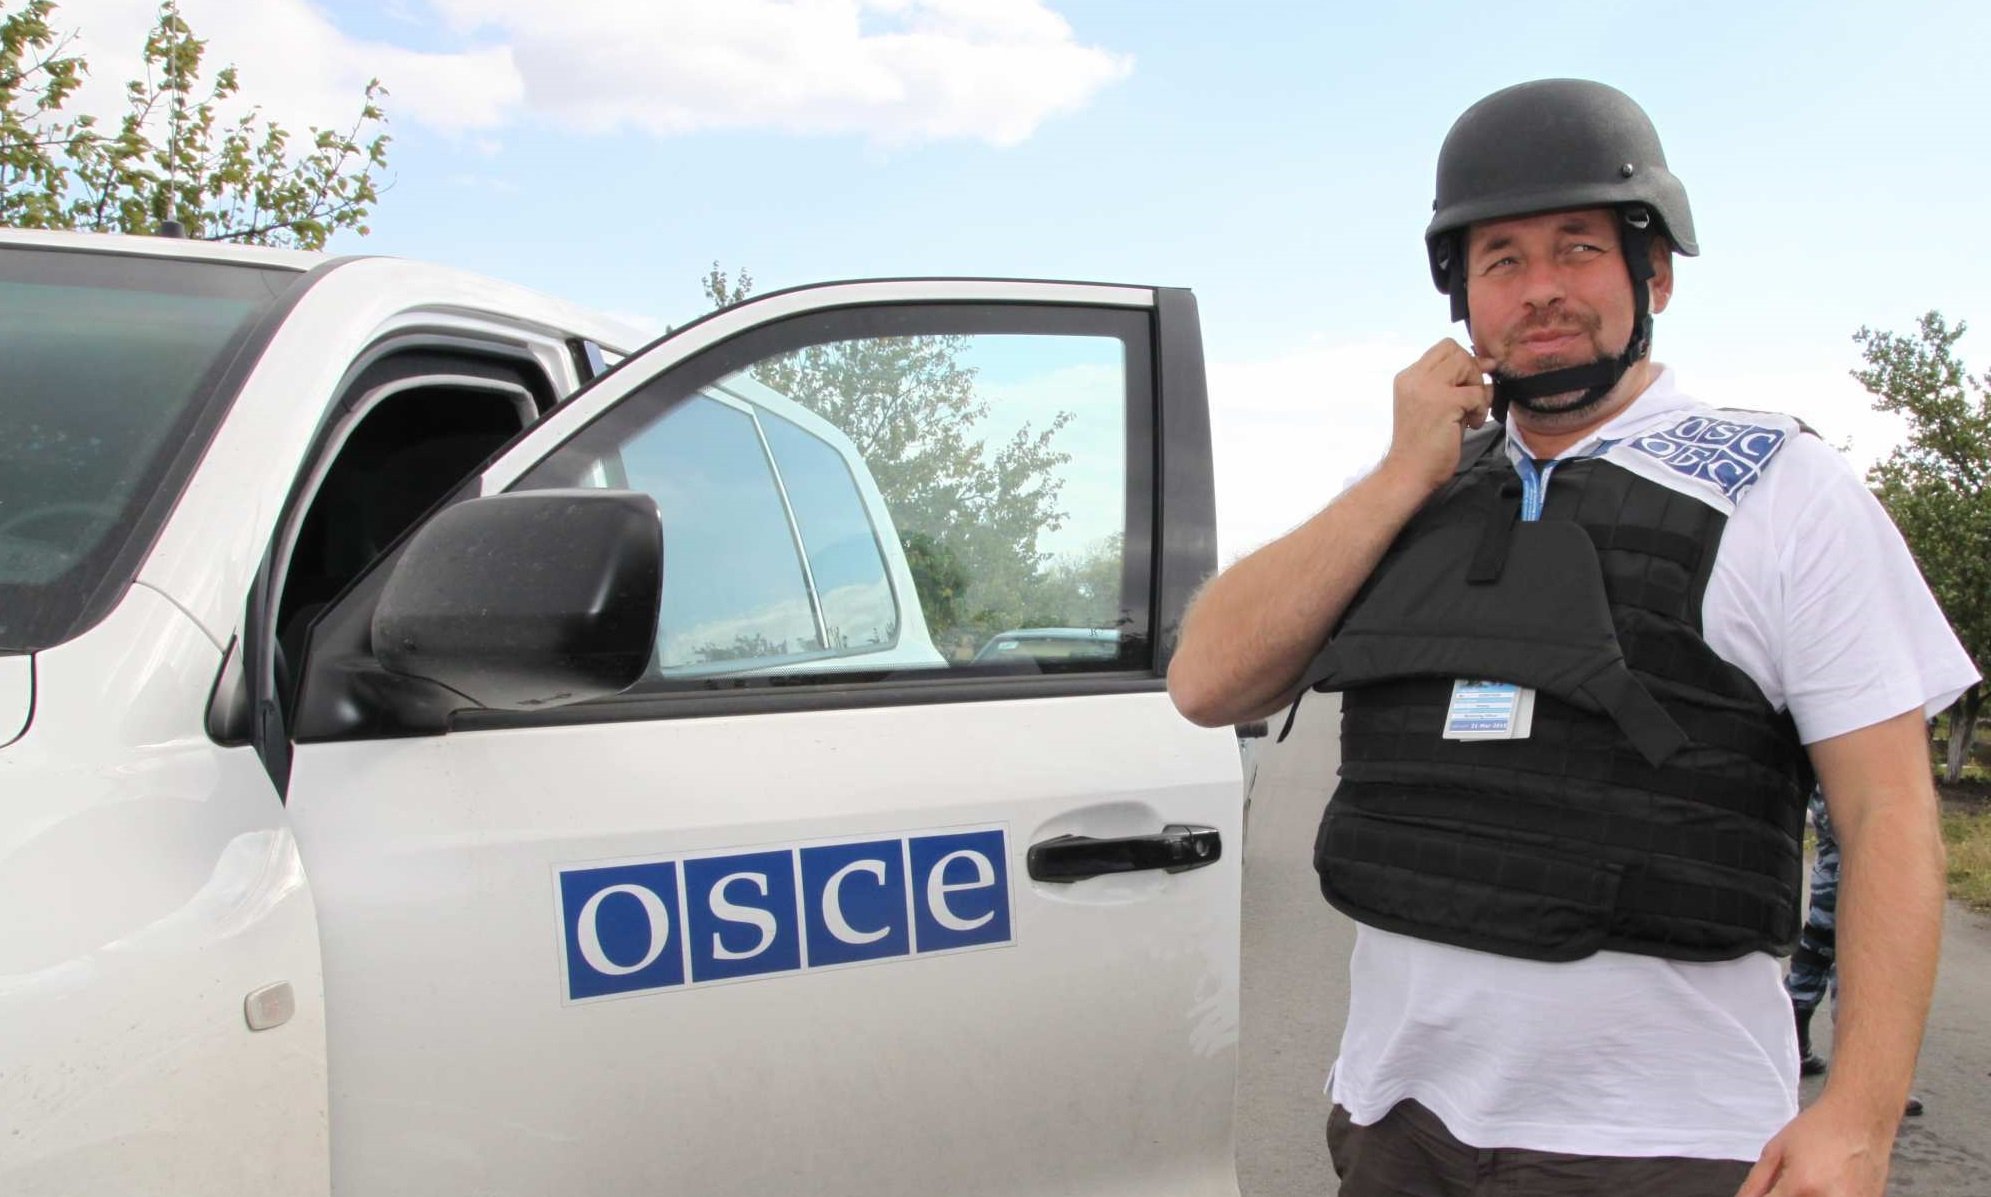 ОБСЕ обвиняет ДНР в нападении на наблюдателей и отзывает патруль